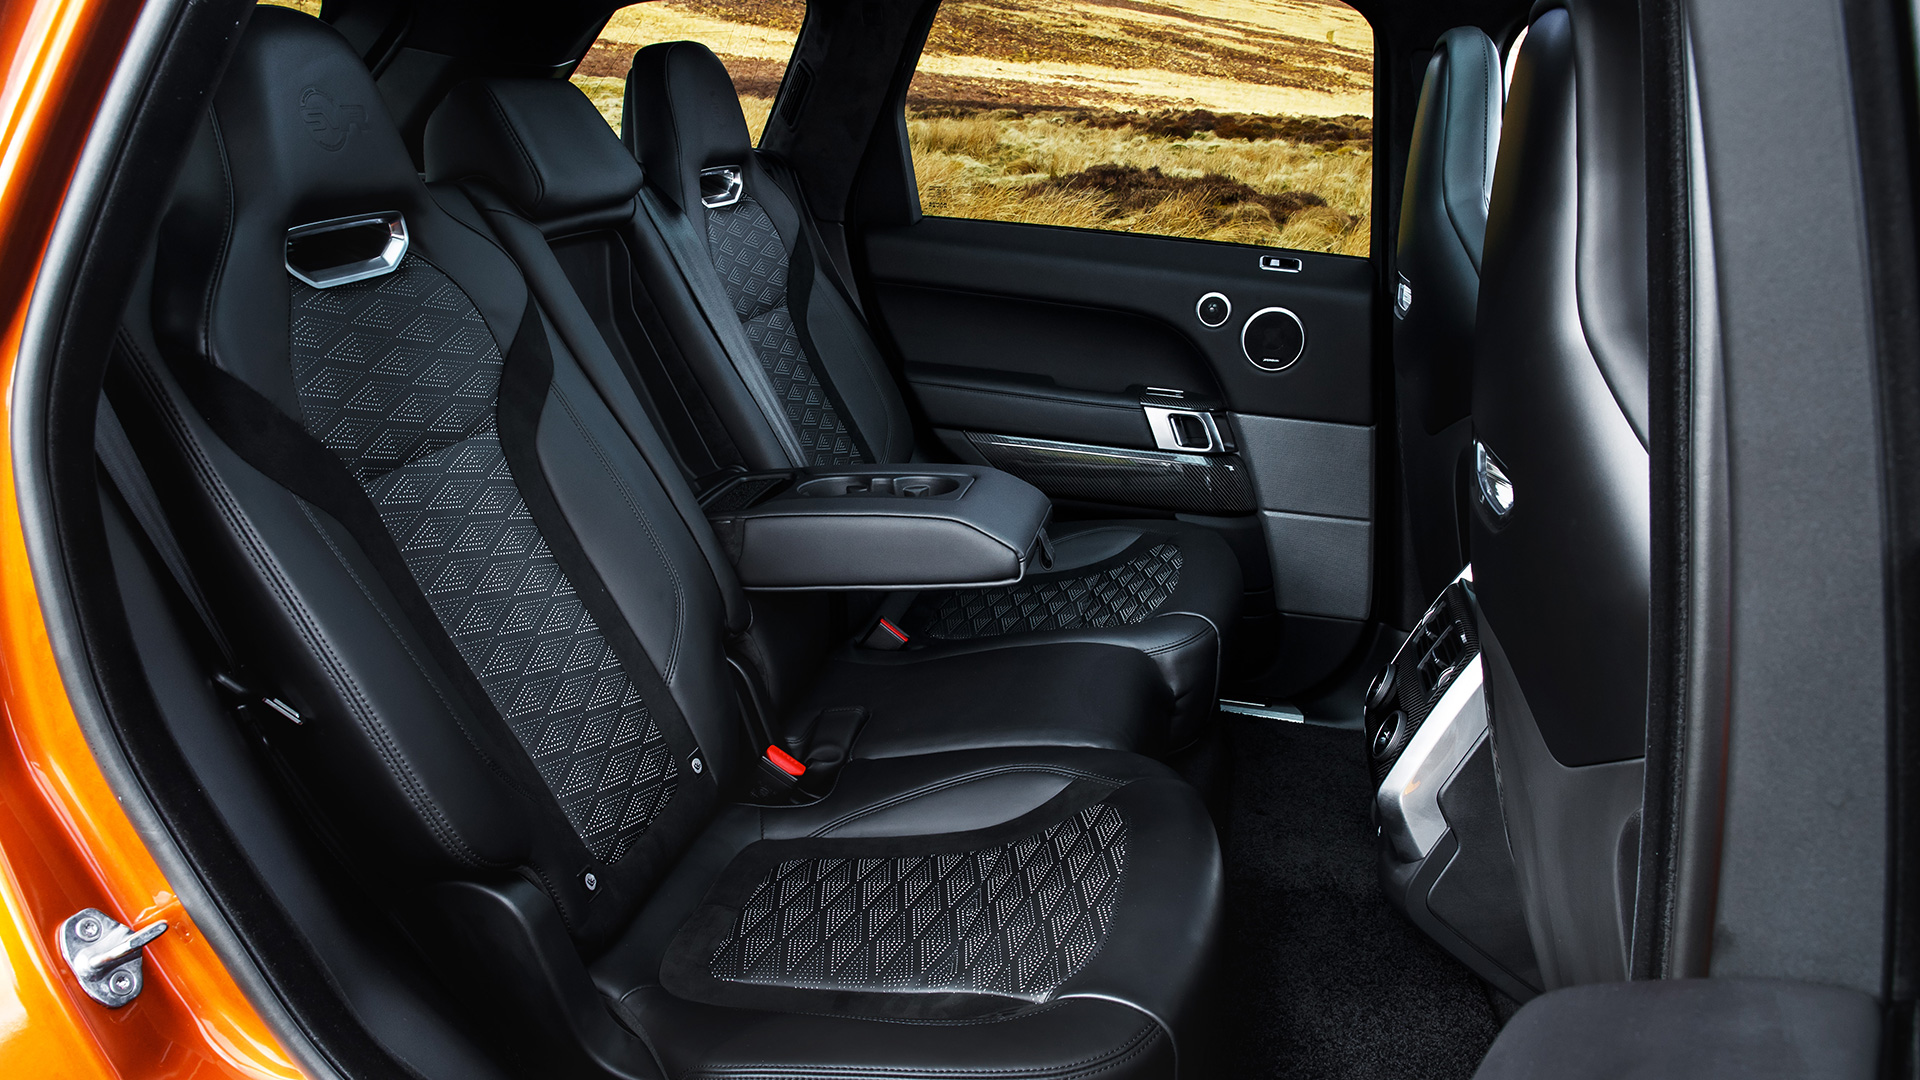 Land Rover Range Rover Sport 2018 Svr Interior Car Photos